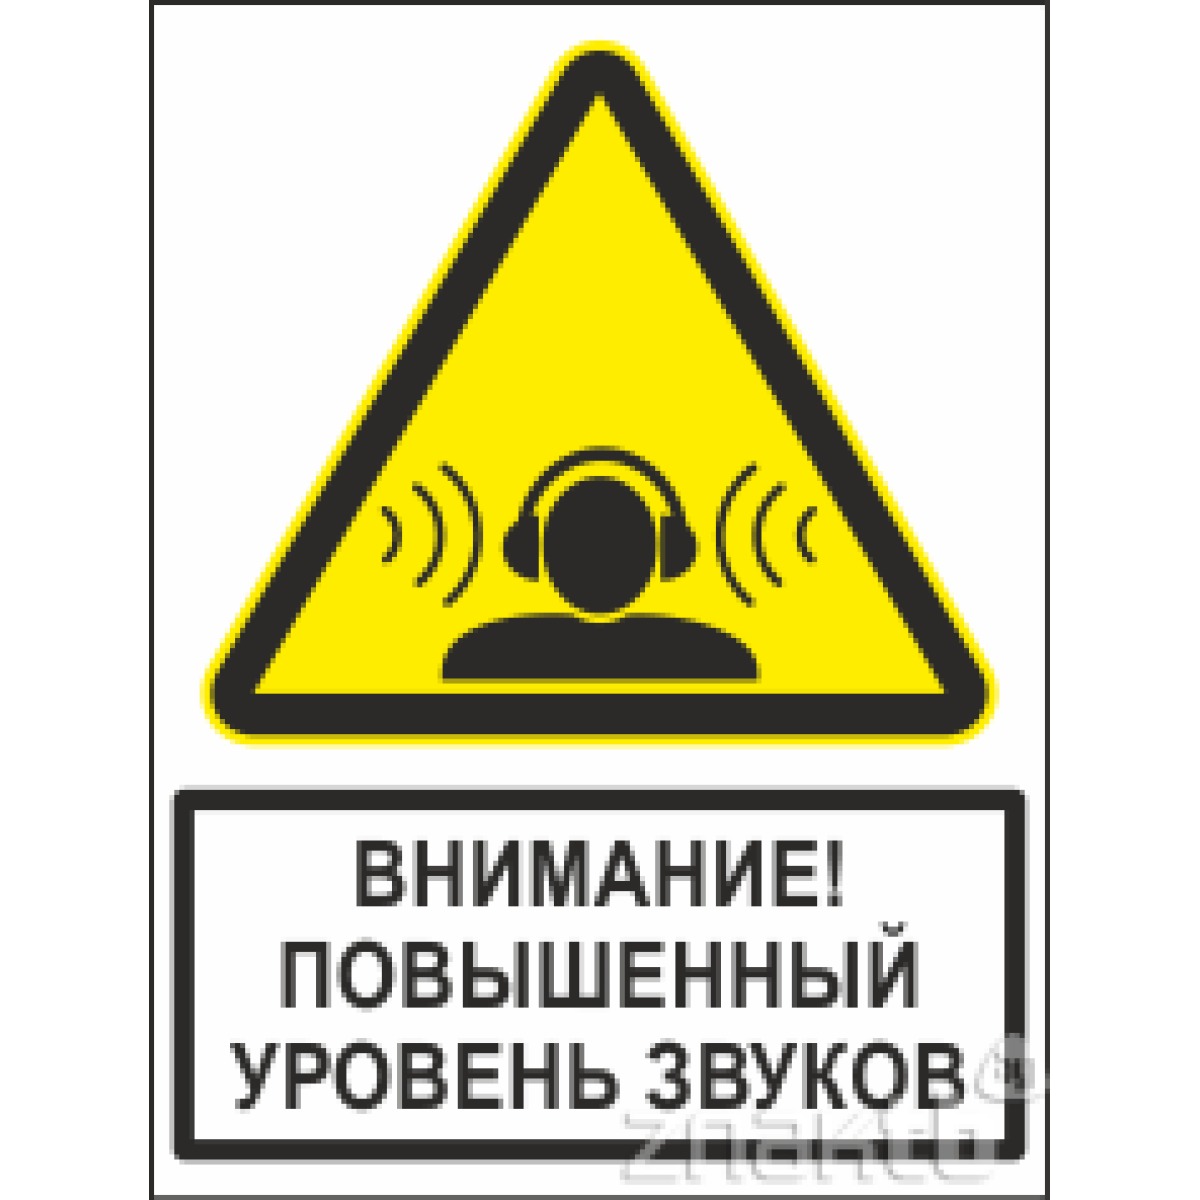 1978 Знак Осторожно! Повышенный уровень звуков (с поясняющей надписью) 200*150 мм